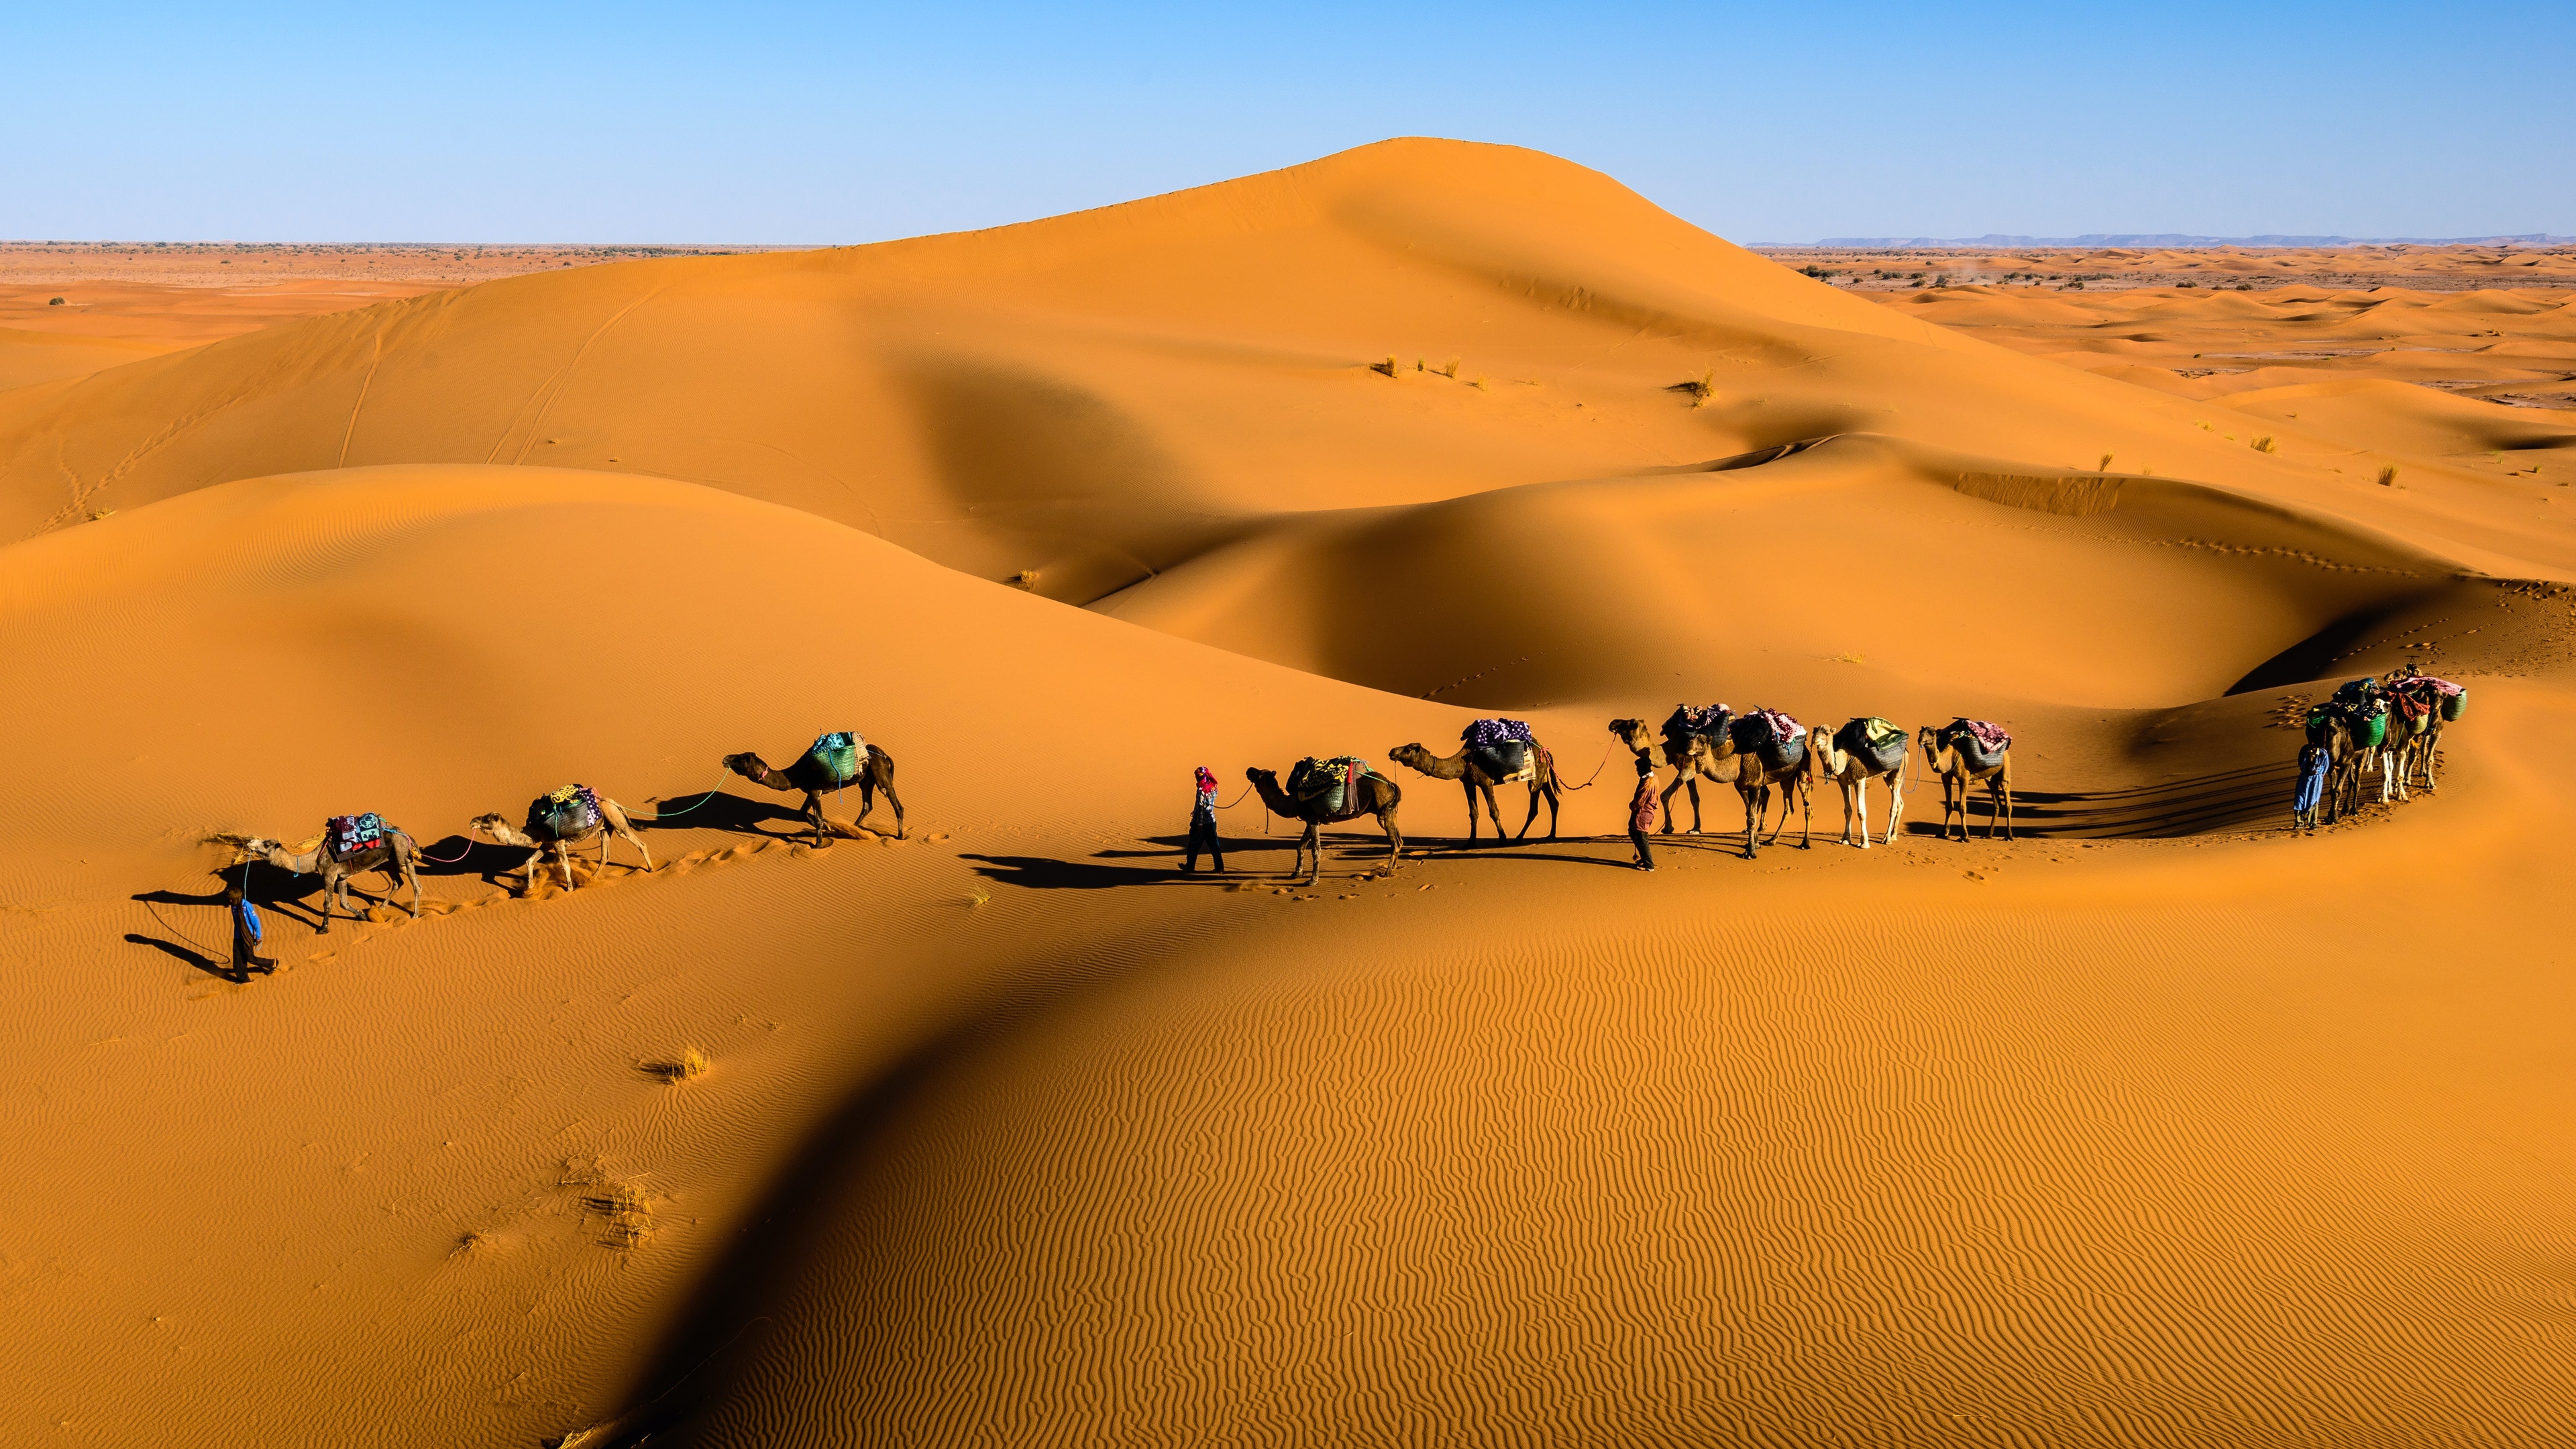 General 3840x2160 desert camels dunes nature sand animals walking landscape